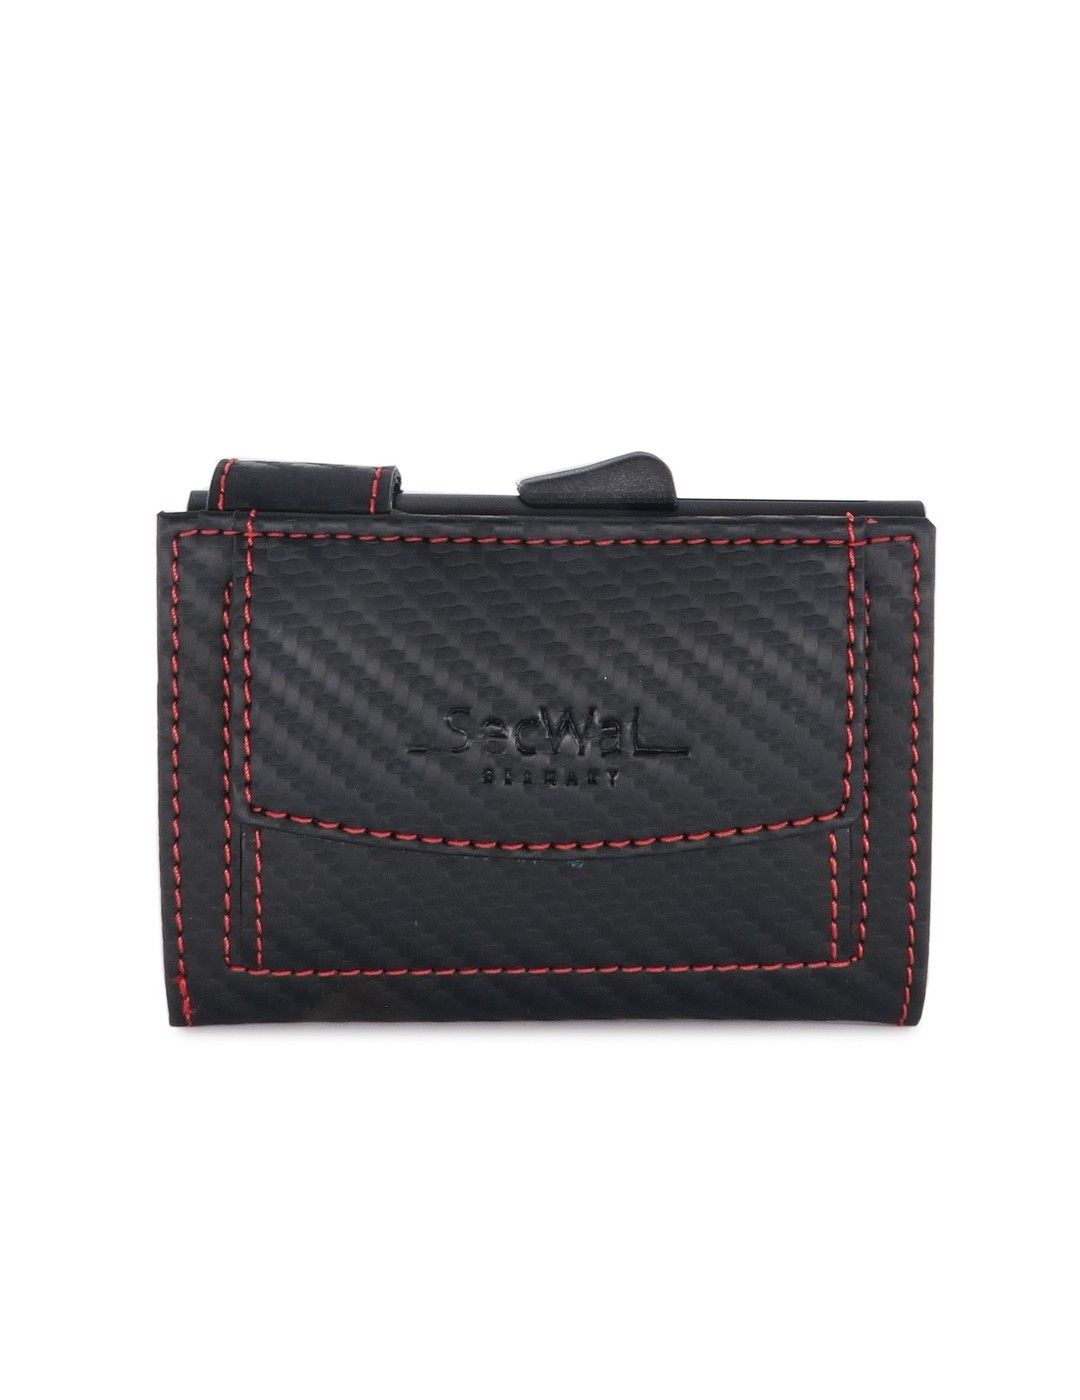 Porte-cartes SecWal DK Leather Carbon noir-rouge